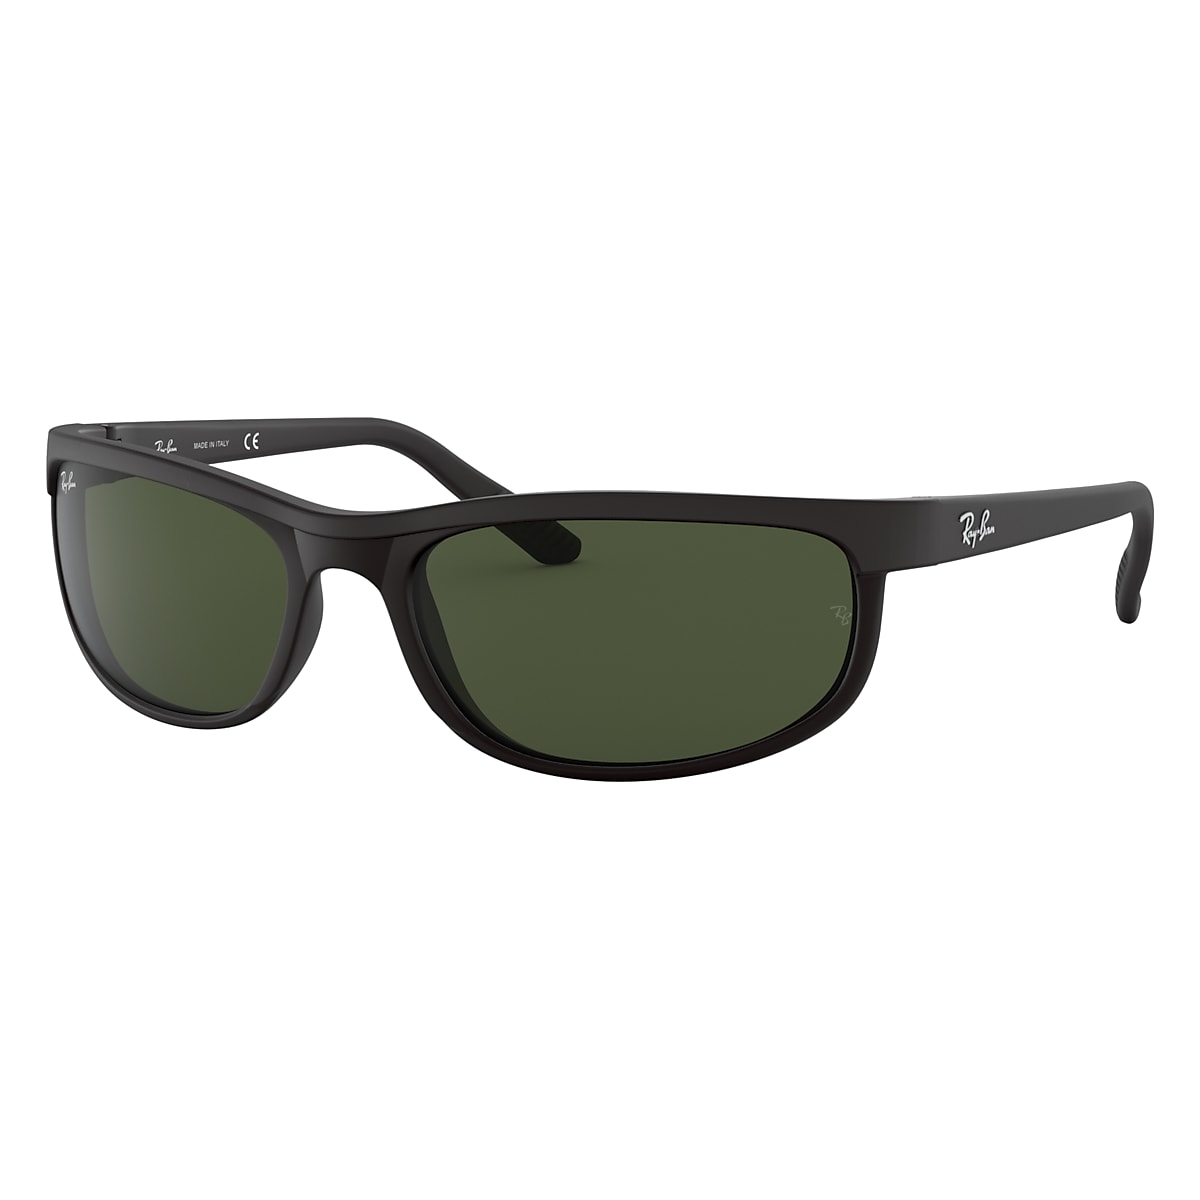 Predator 2 Sunglasses in Preto and Verde | Ray-Ban®